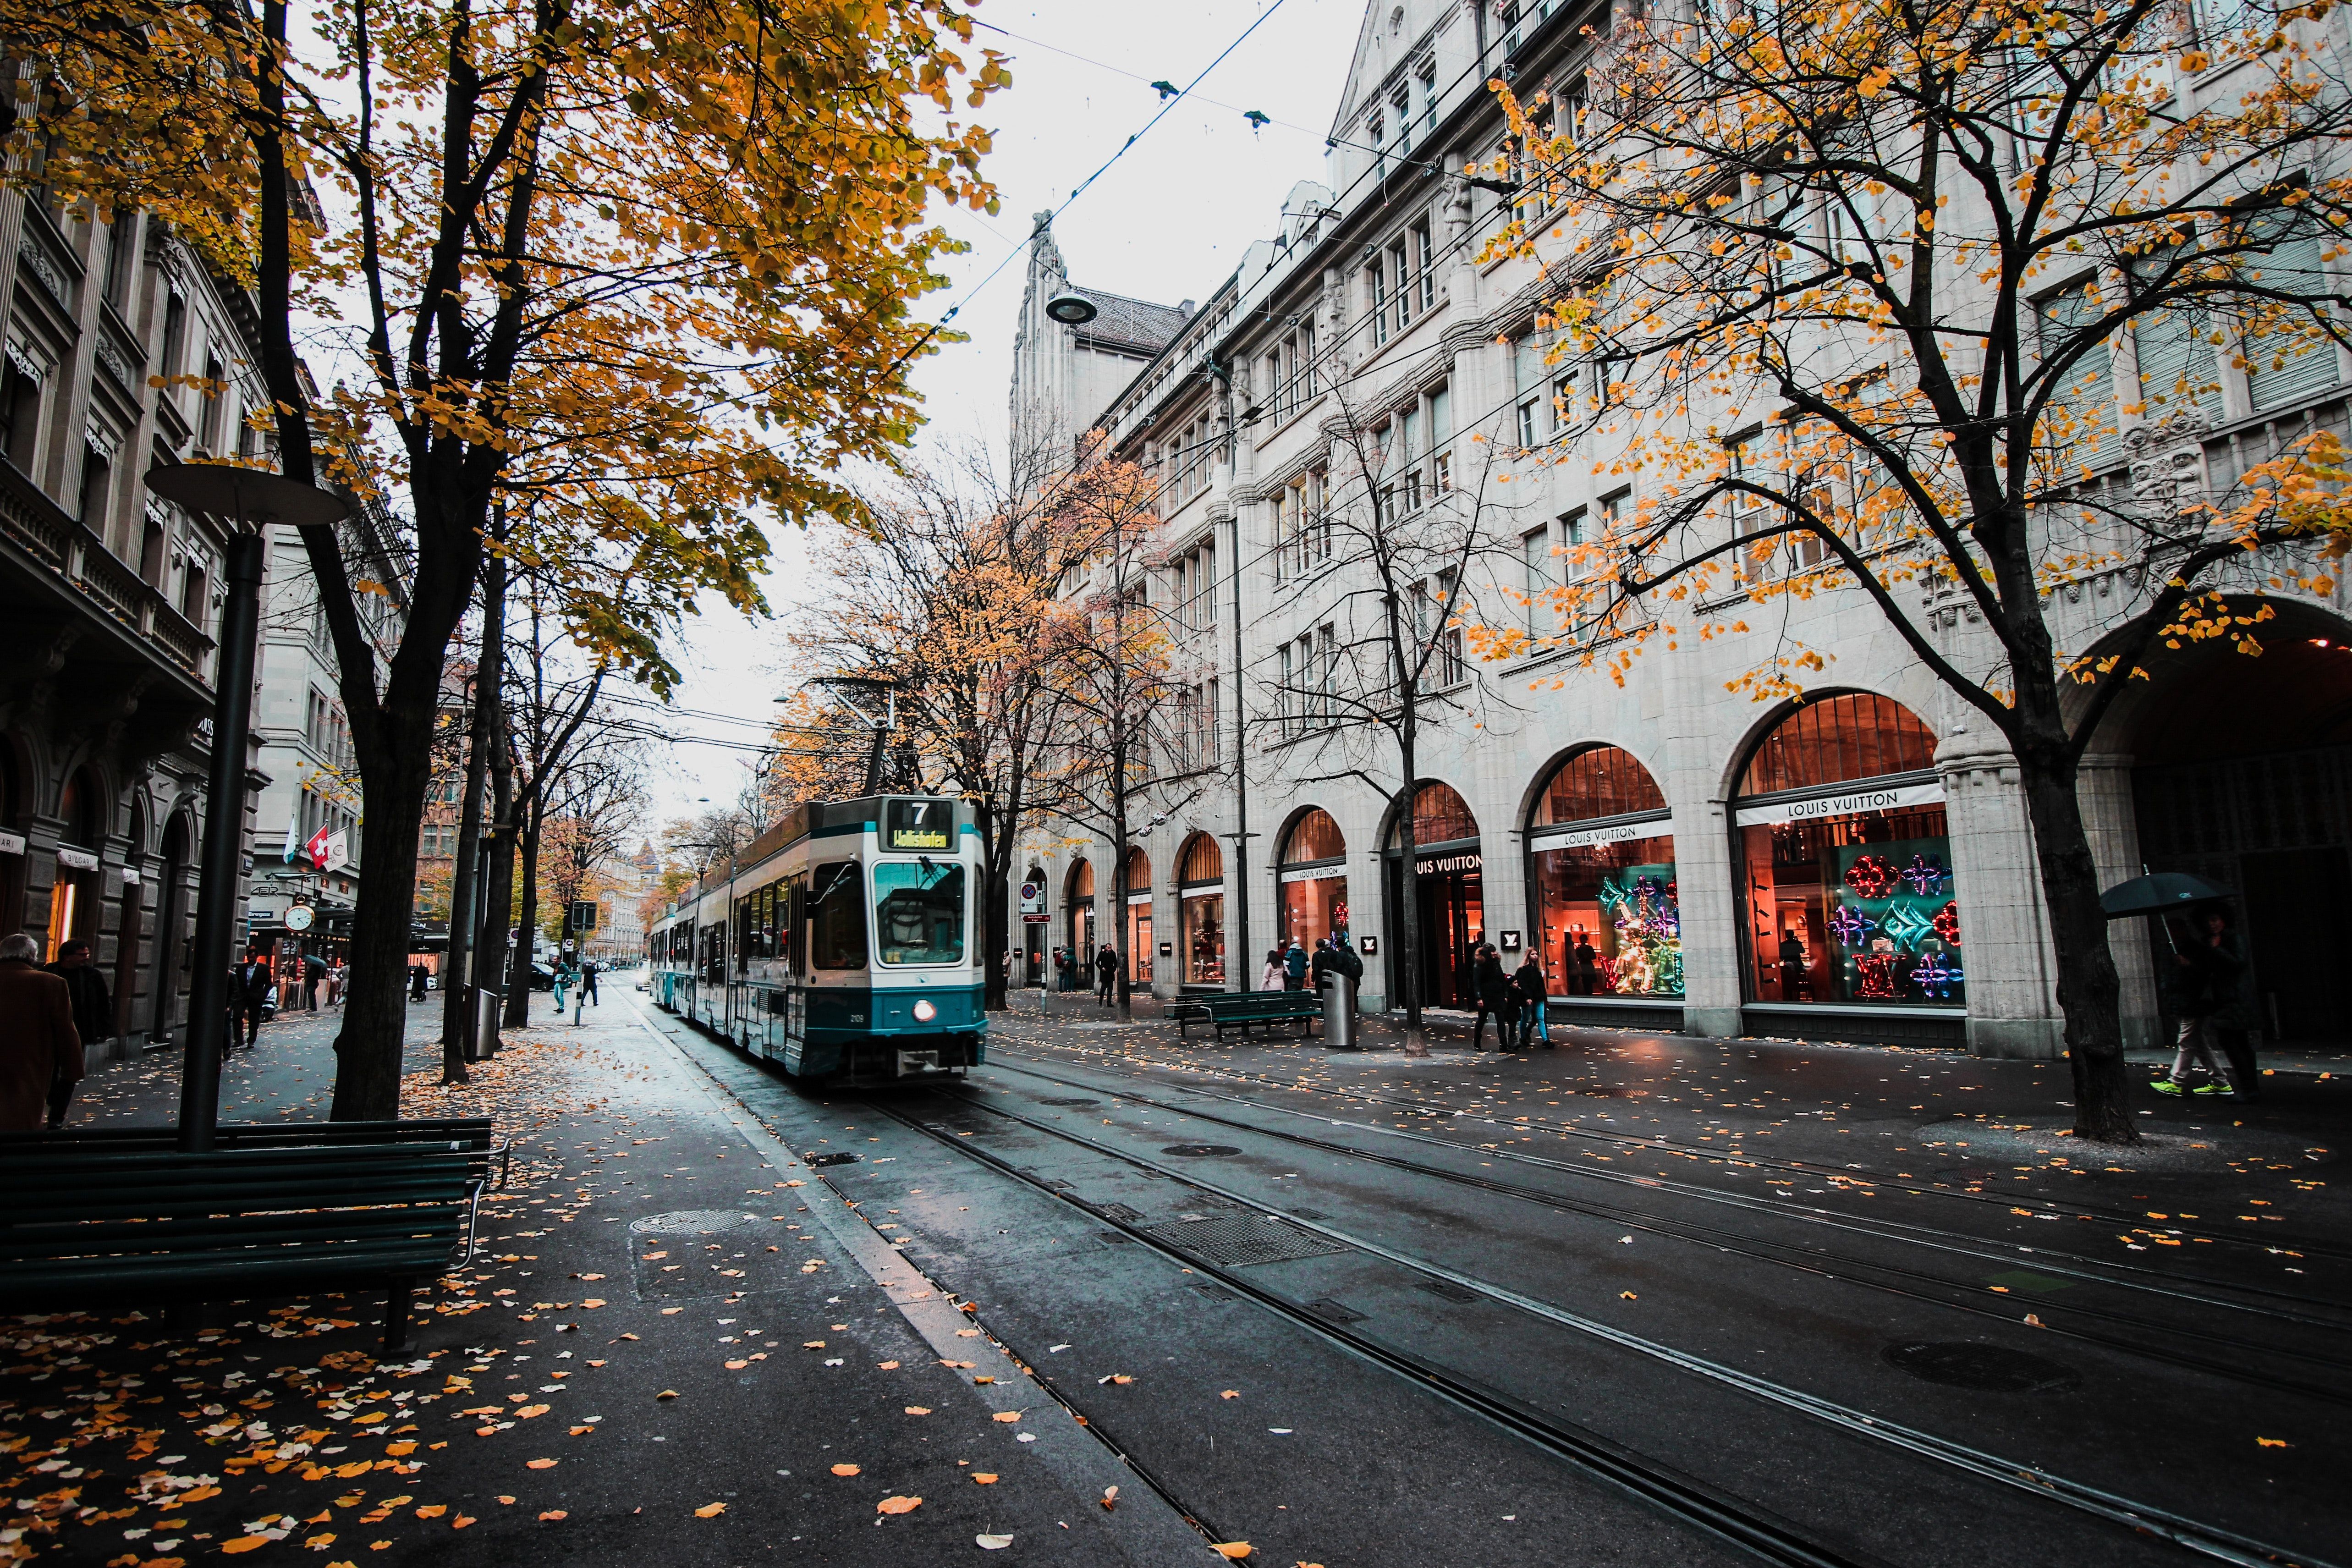 A tram on a wet autumn street - Travel